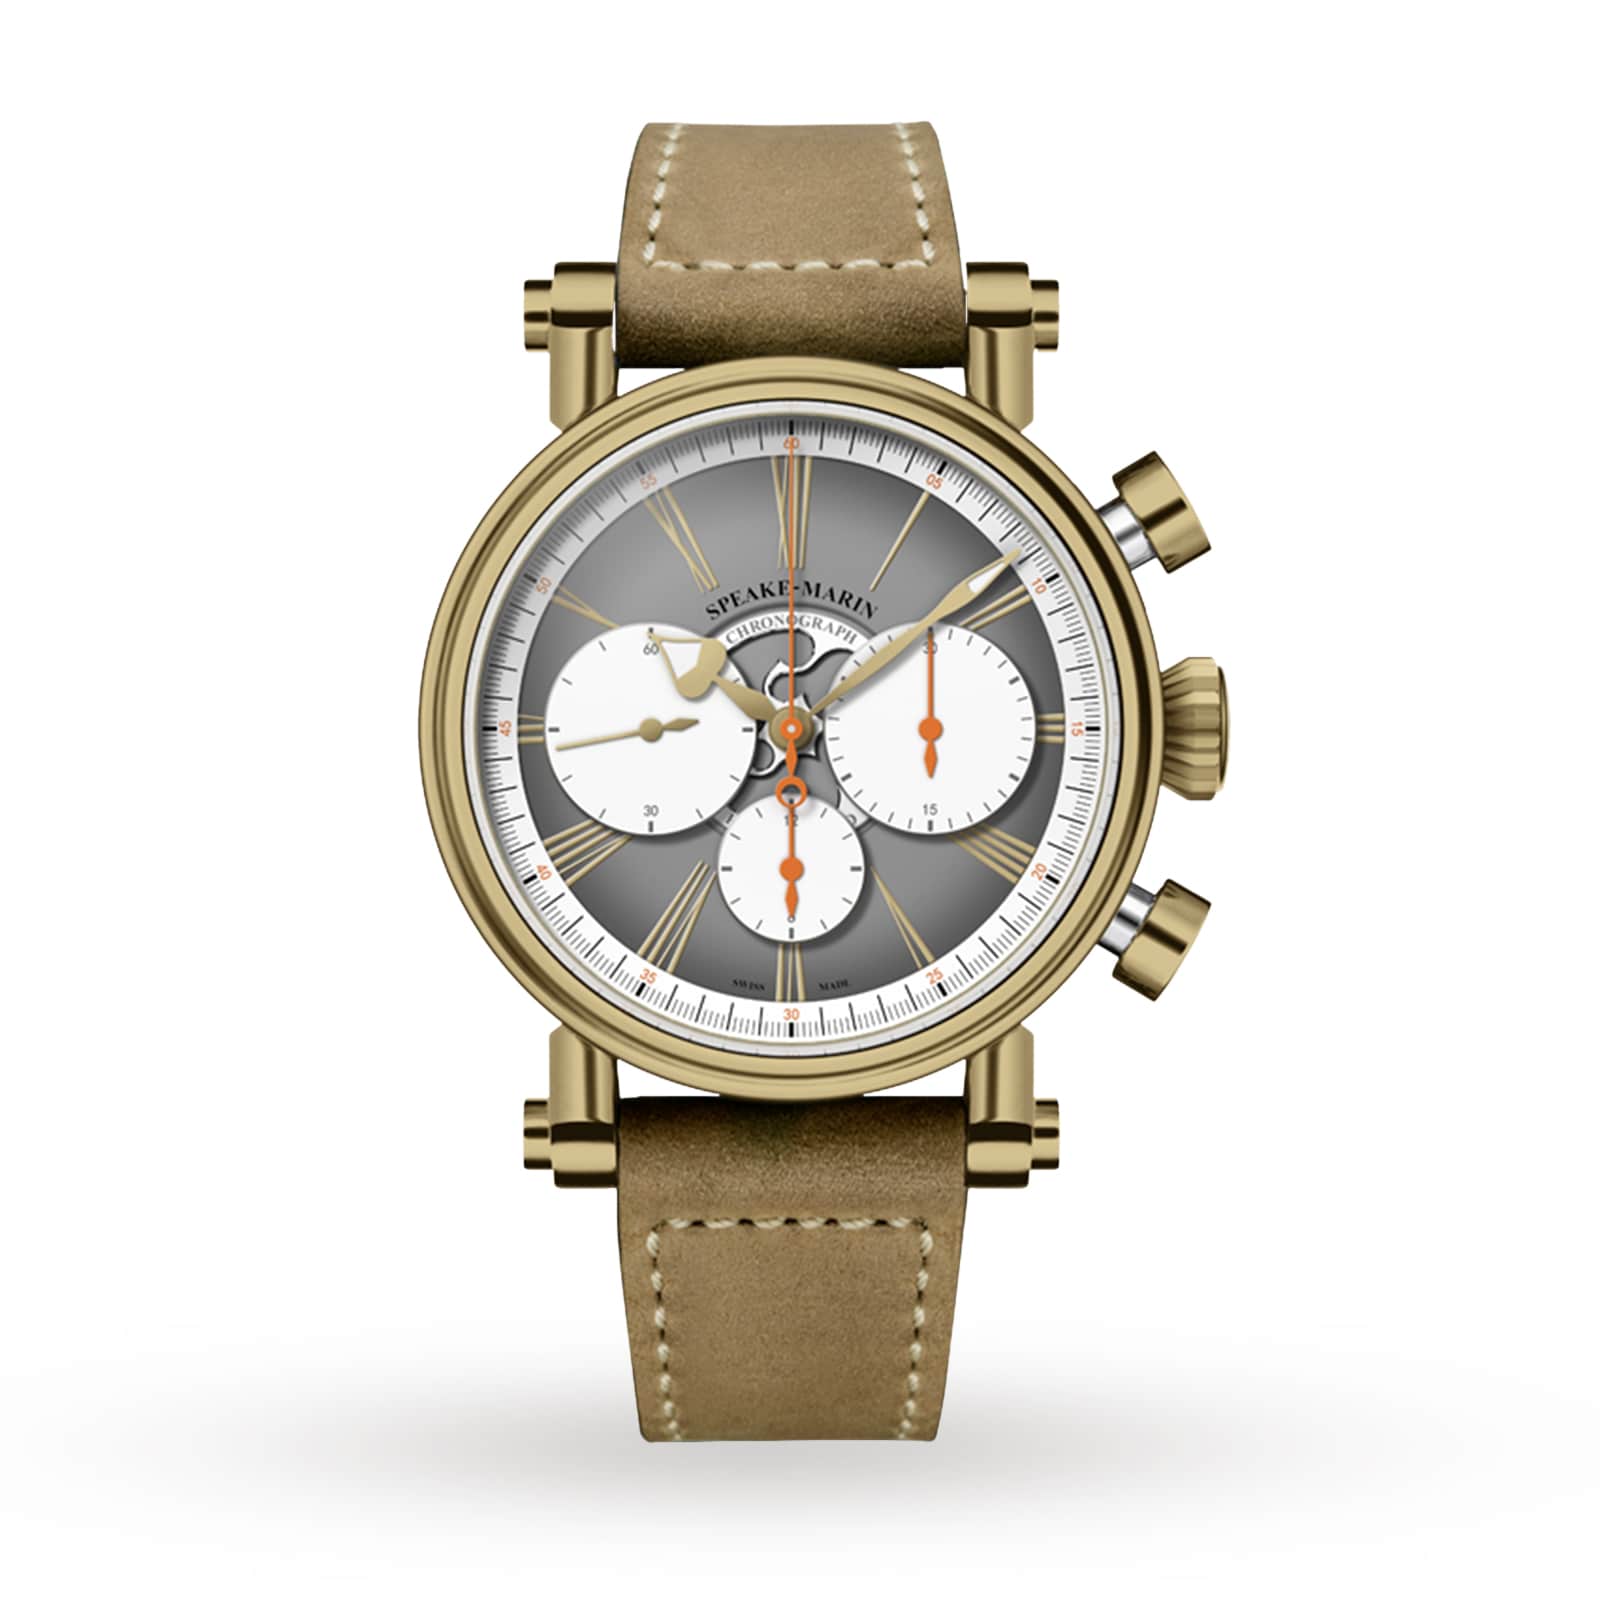 Speake-Marin Haute Horlogerie London Watches 594208060 Switzerland | US Chronograph 42mm Bronze Of